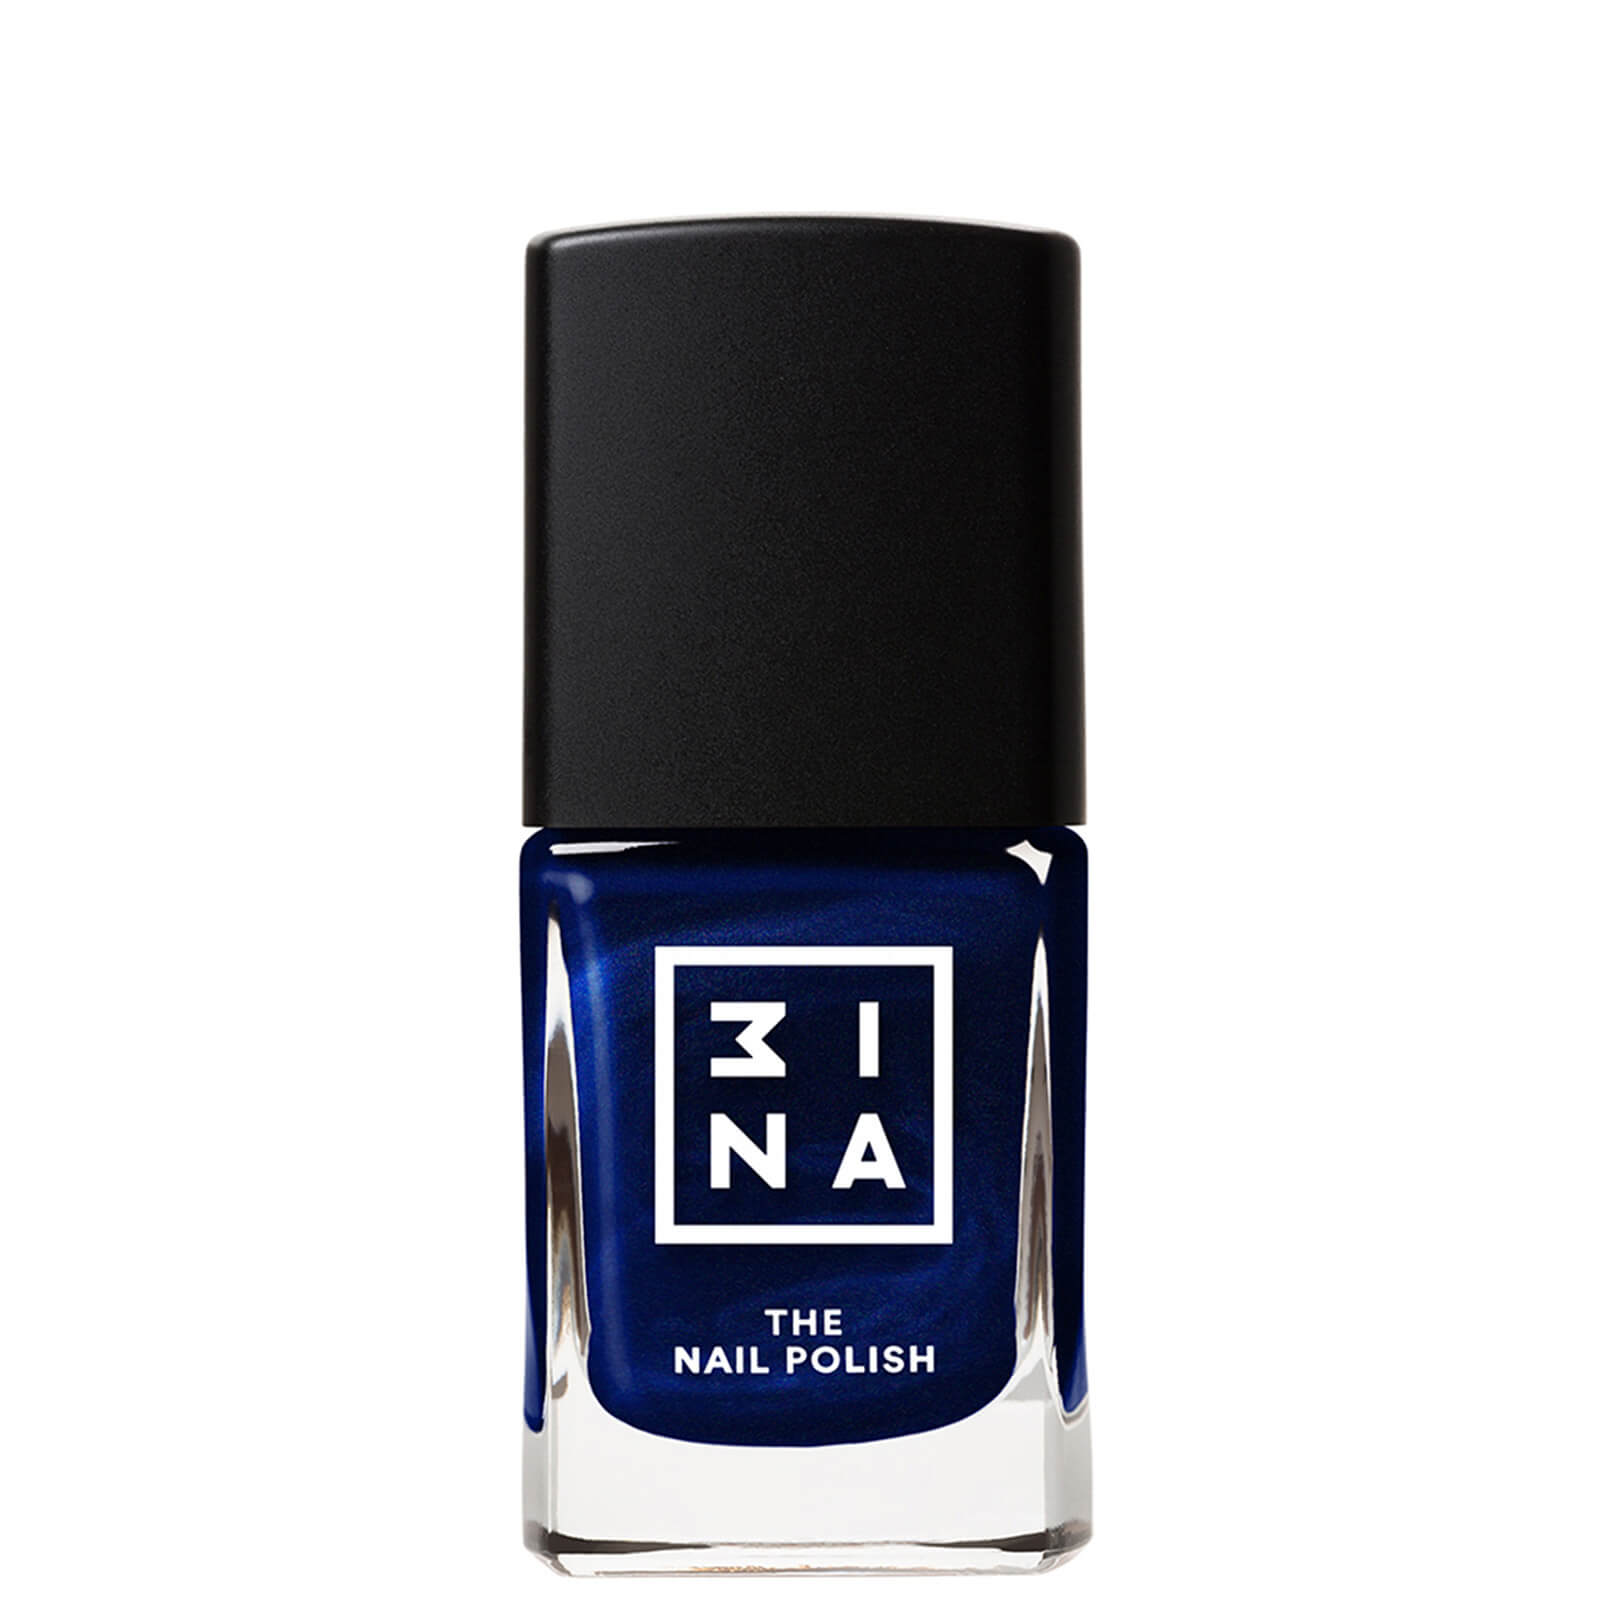 3INA Makeup The Nail Polish (Various Shades) - 176